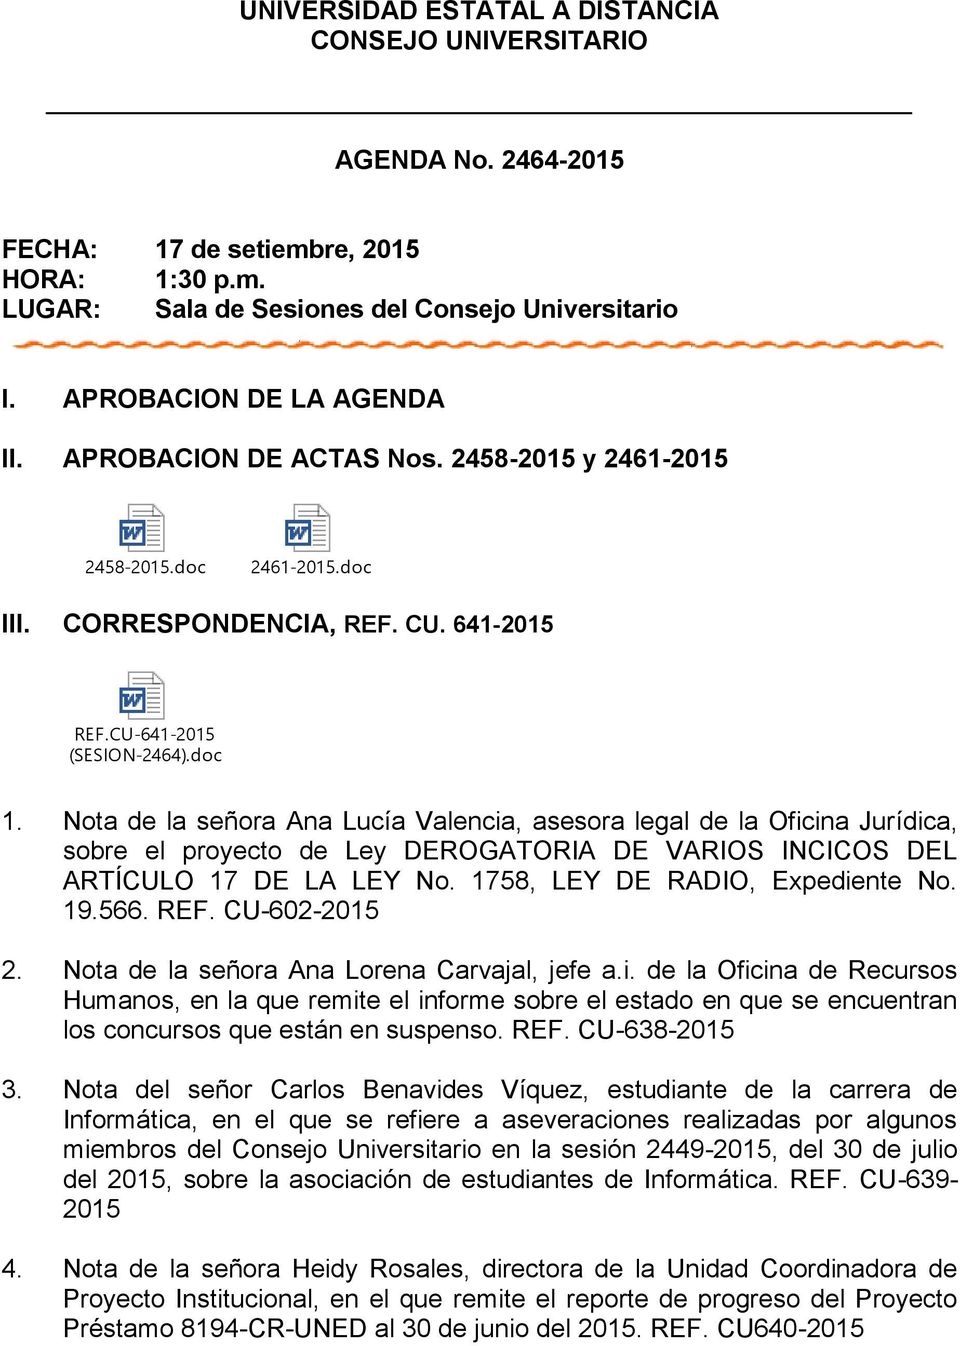 Nota de la señora Ana Lucía Valencia, asesora legal de la Oficina Jurídica, sobre el proyecto de Ley DEROGATORIA DE VARIOS INCICOS DEL ARTÍCULO 17 DE LA LEY No. 1758, LEY DE RADIO, Expediente No. 19.